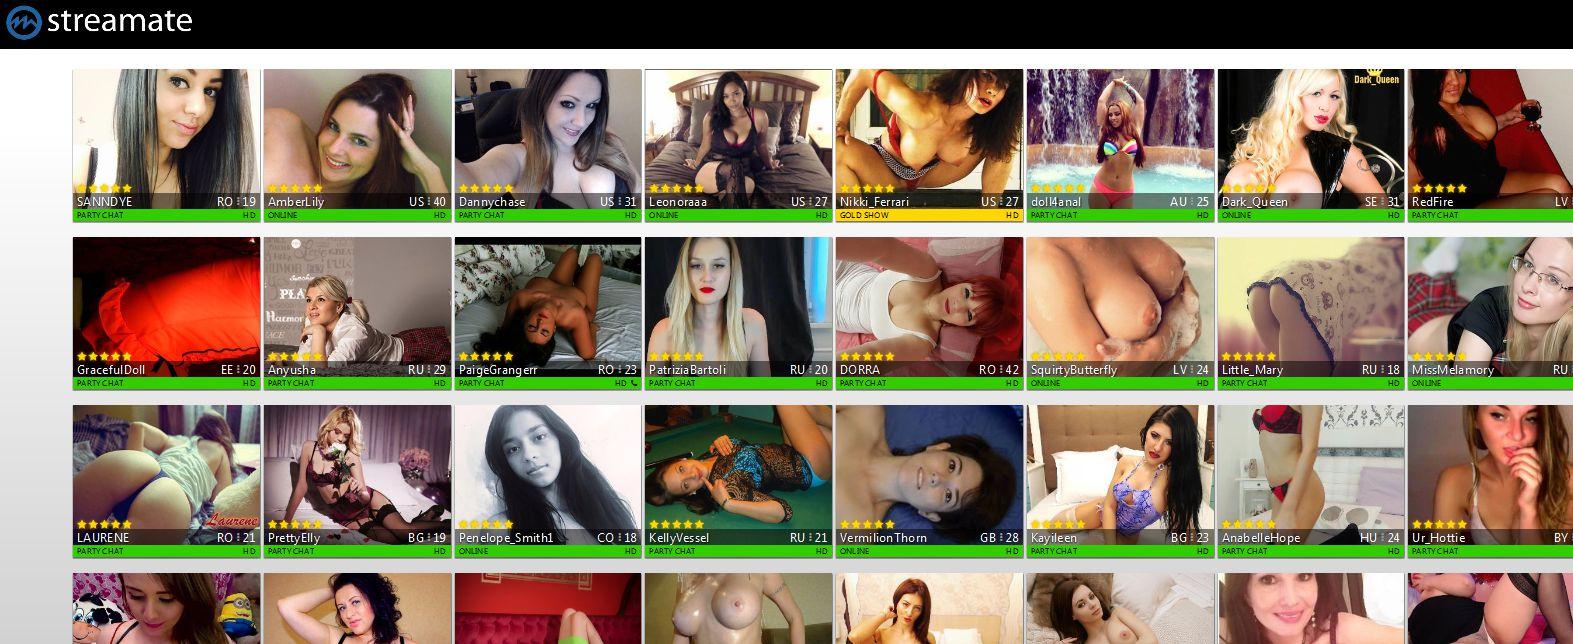 Image result for streamate cam sex show